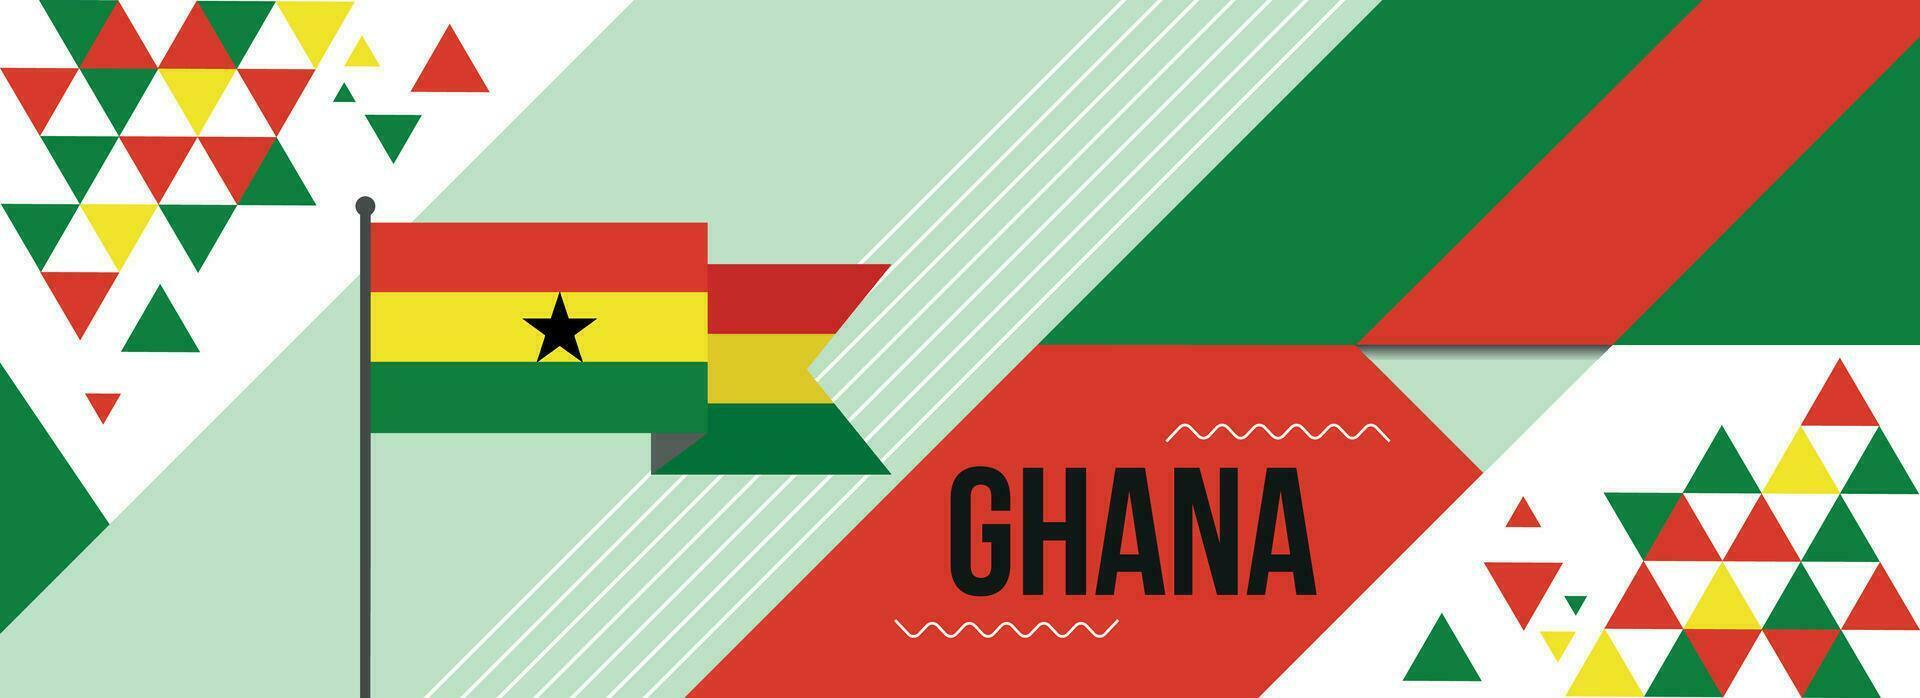 Ghana National oder Unabhängigkeit Tag Banner Design zum Land Feier. Flagge von Ghana mit modern retro Design und abstrakt geometrisch Symbole. Vektor Illustration.